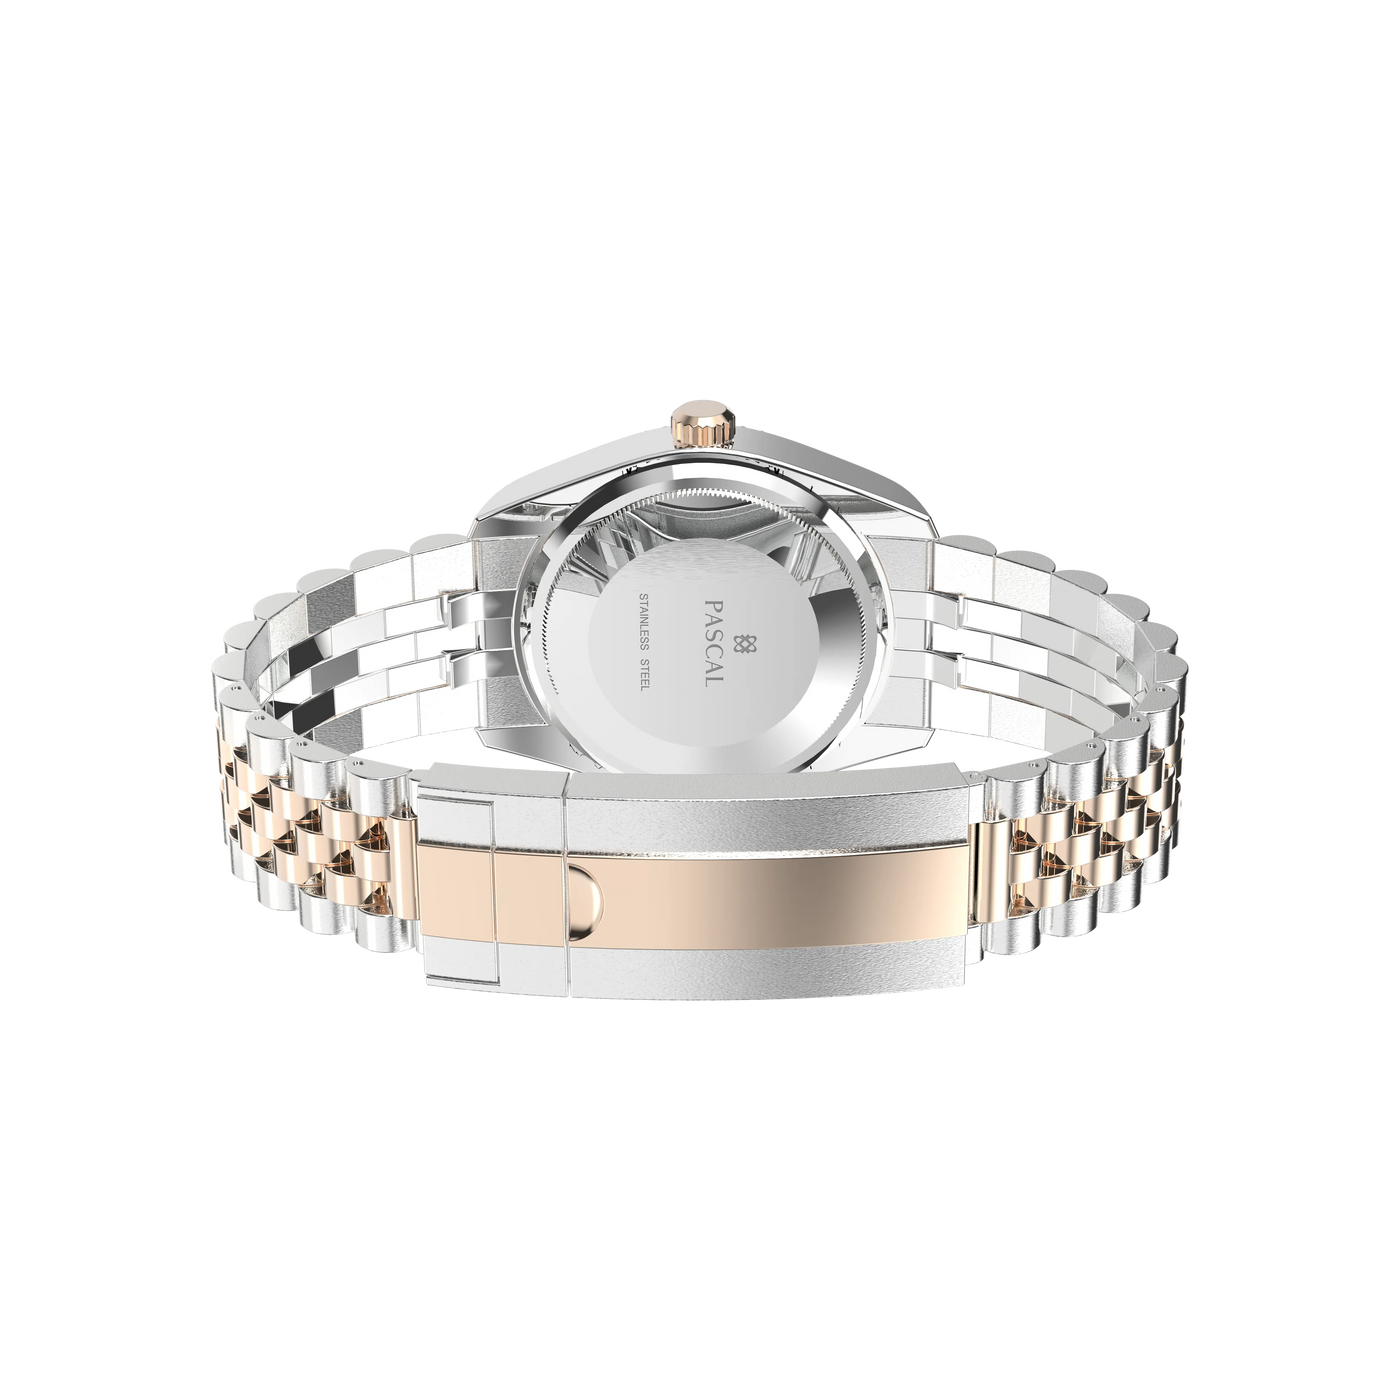 Reloj Pascal Royal Luxe con diamantes (bisel de algodón de azúcar)